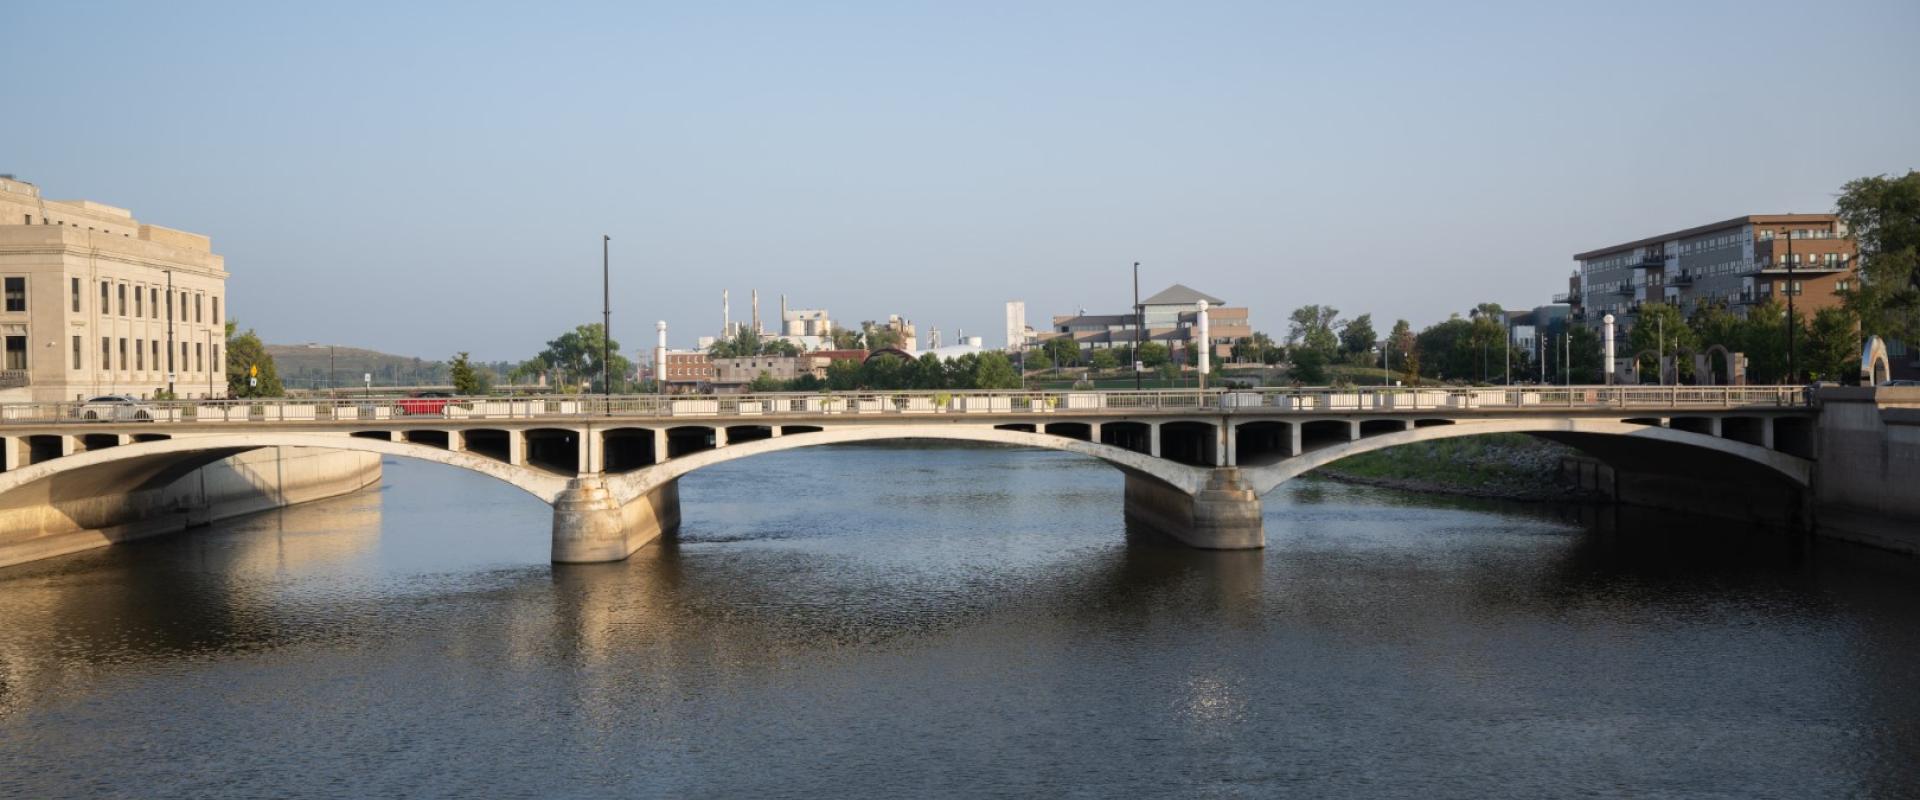 Cedar Rapids Bridge